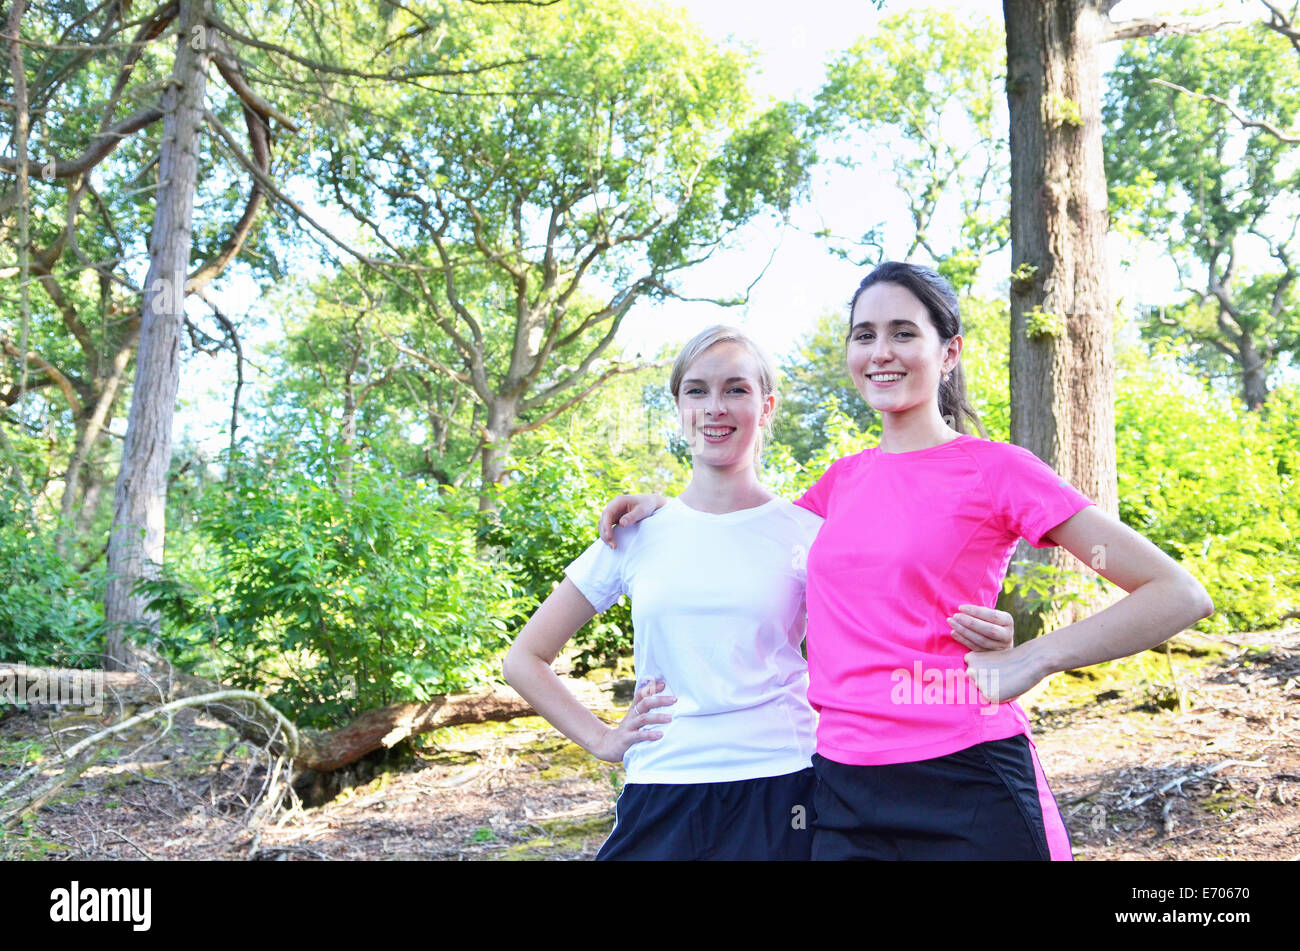 Portrait de deux jeunes femmes dans une forêt Banque D'Images